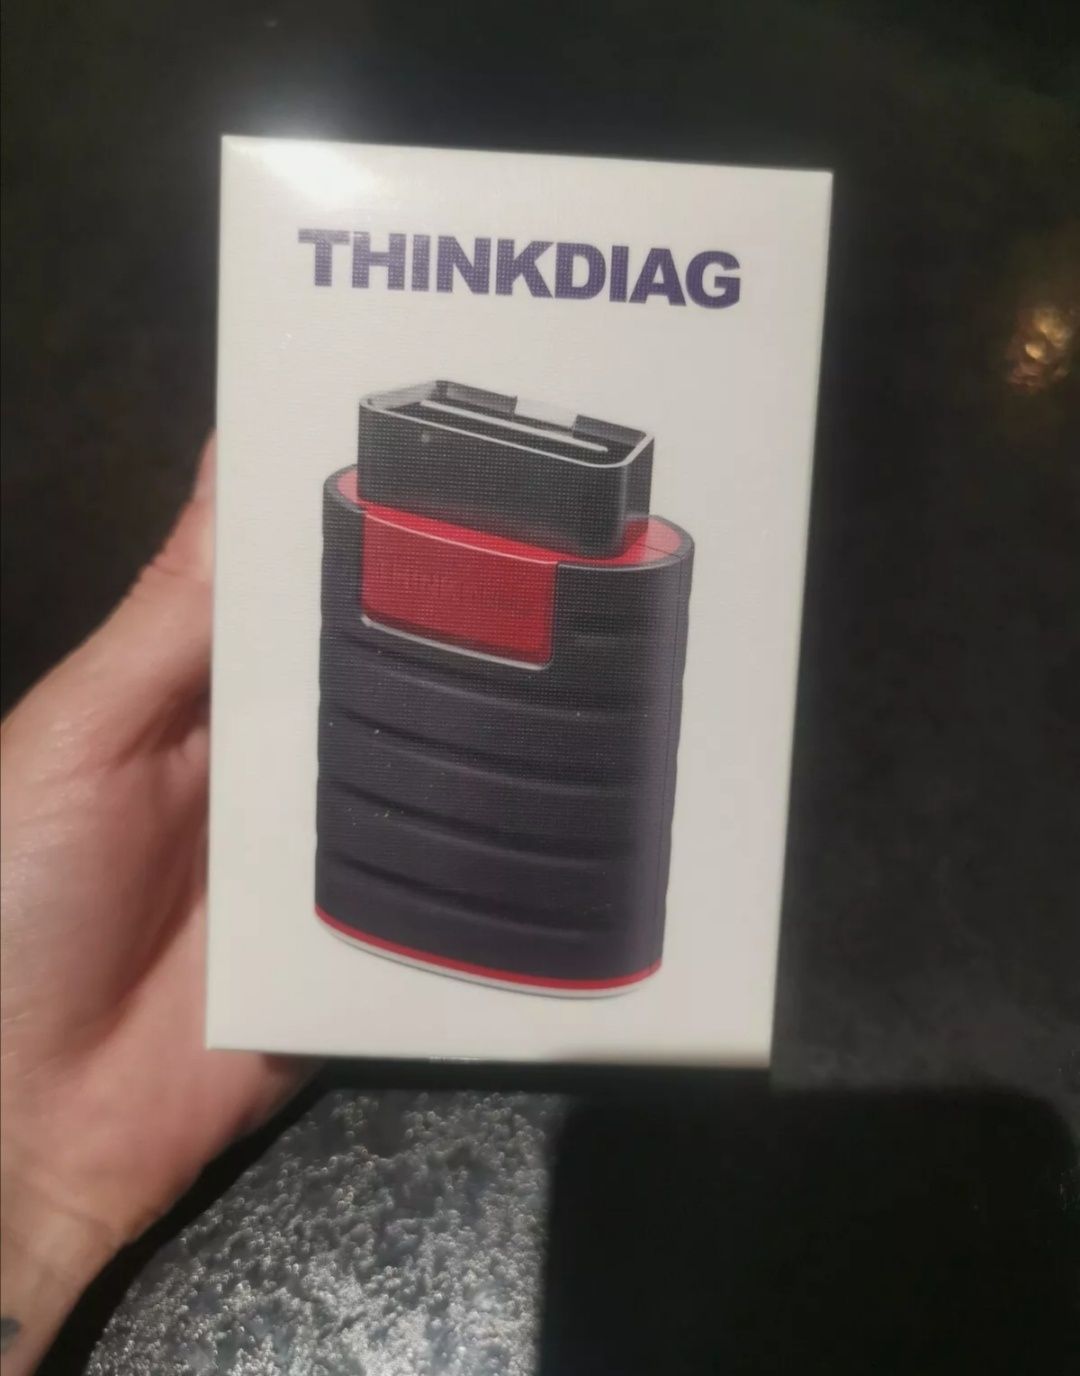 Thinkdiag Launch Thinkcar Think diag